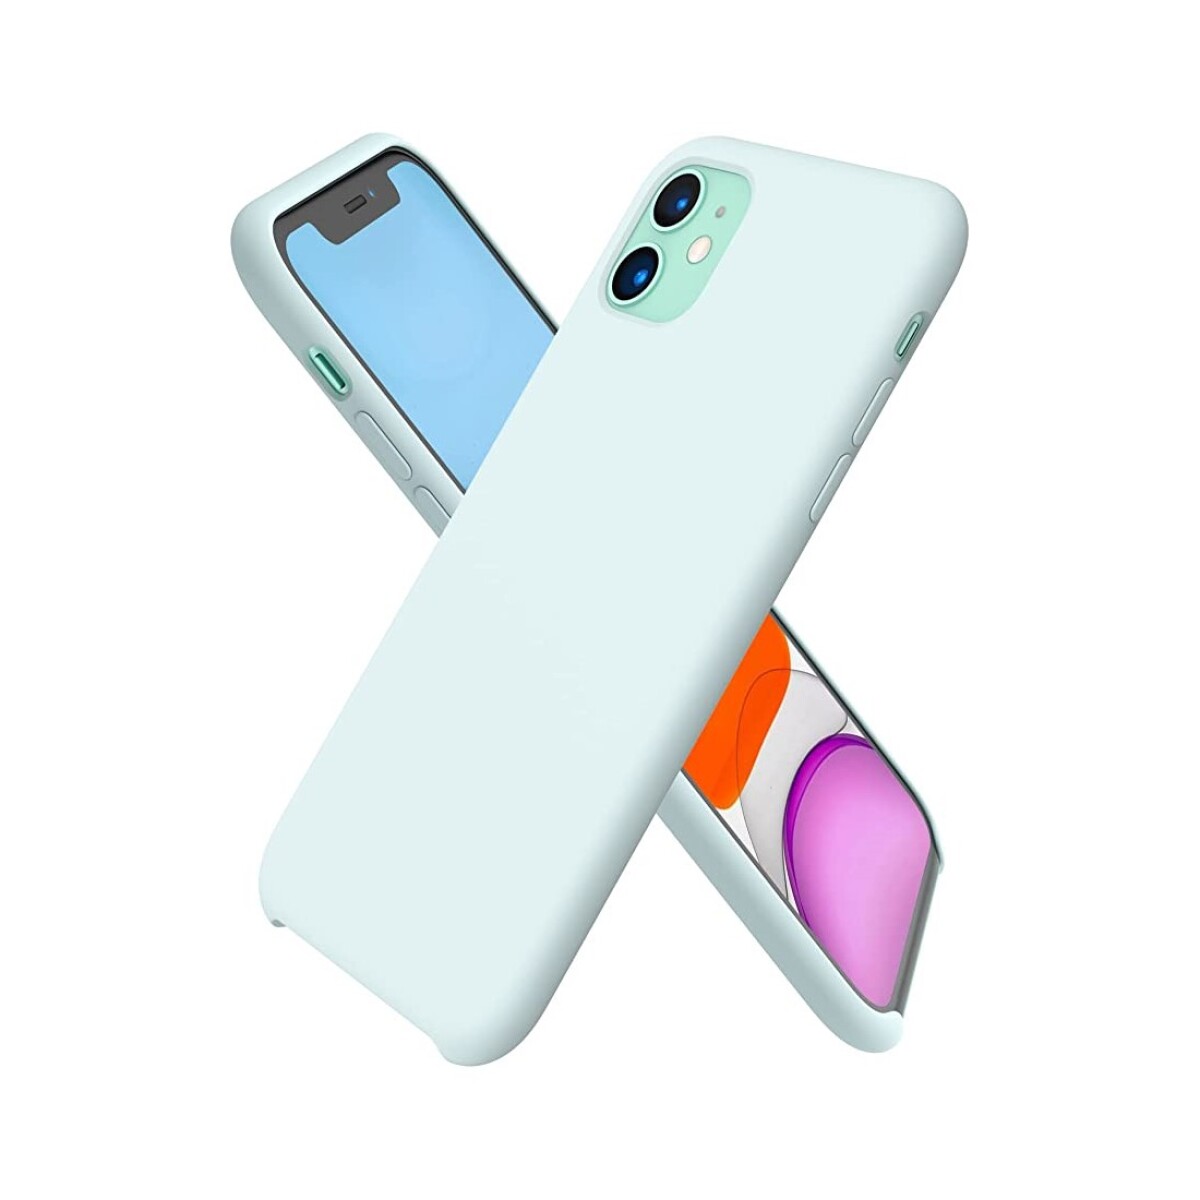 Protector case de silicona para iphone 11 - Celeste pastel 